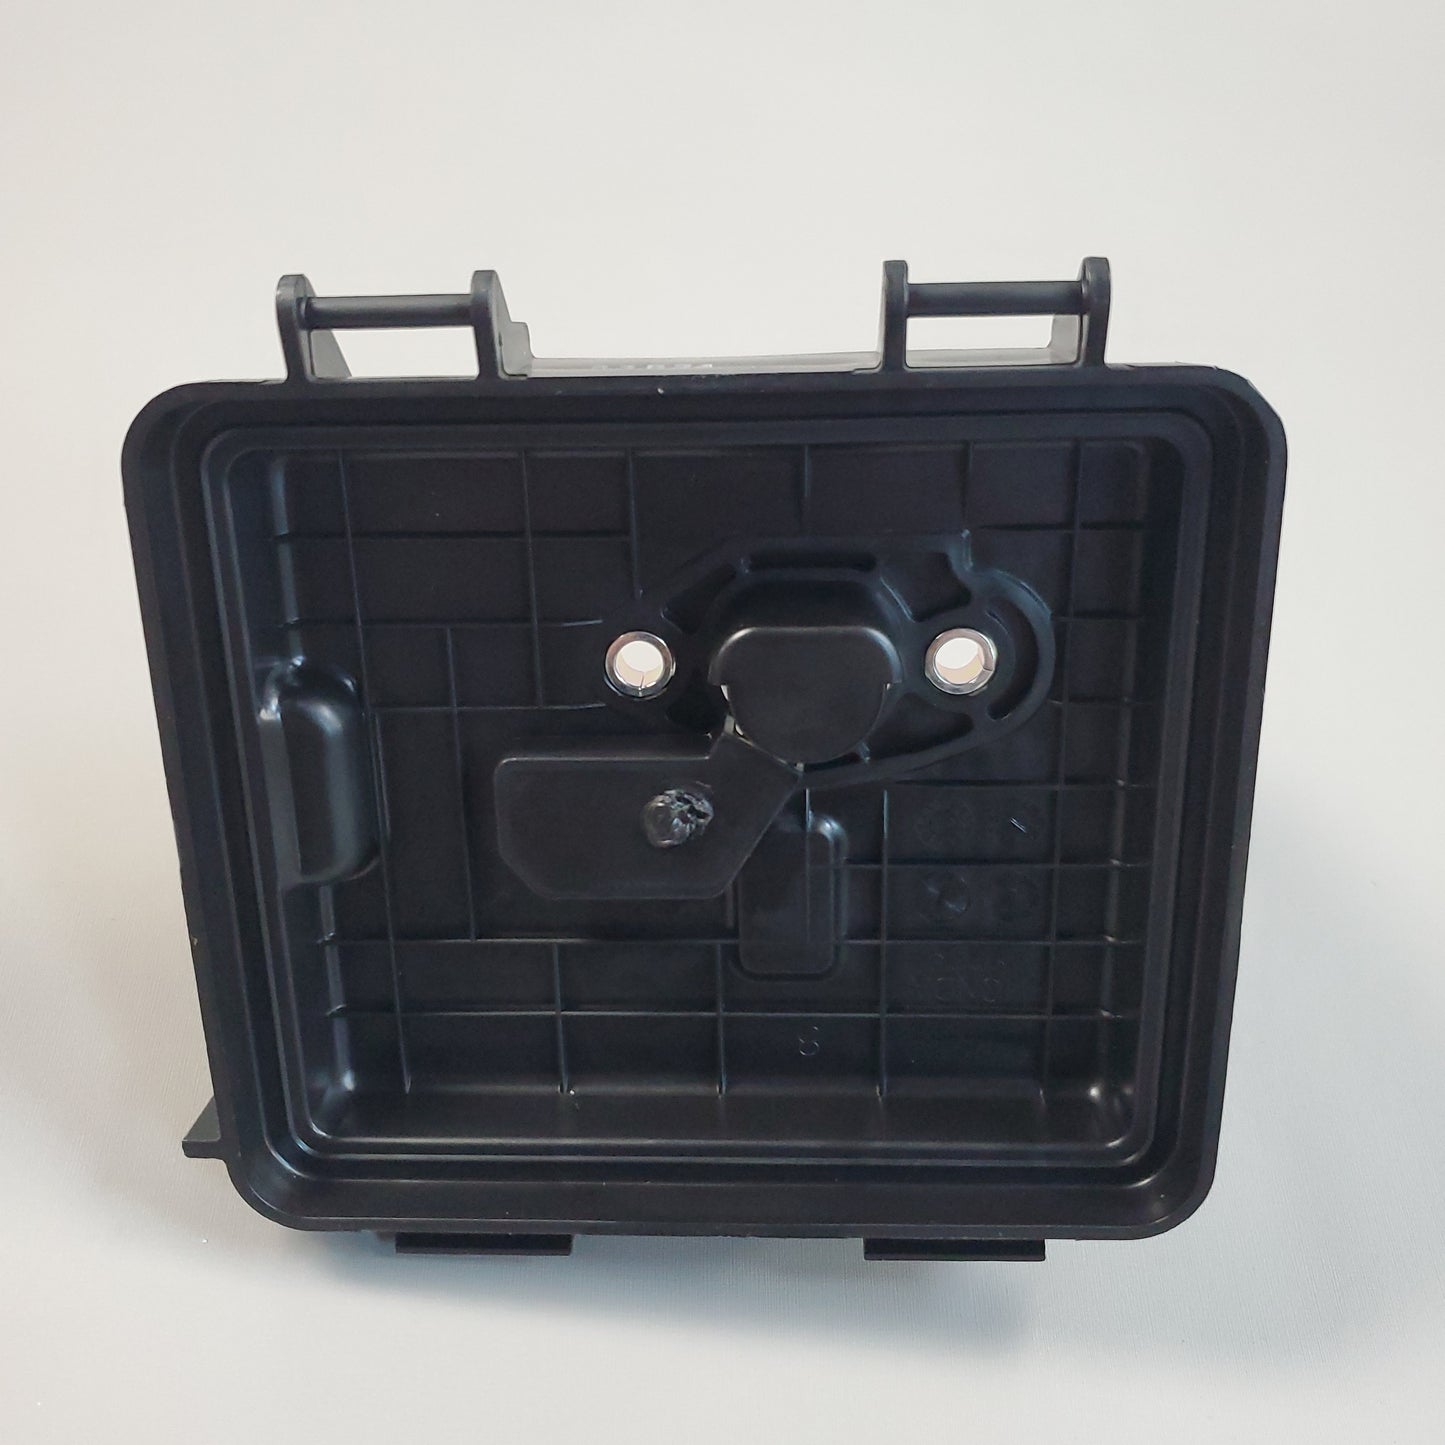 HONDA Air Filter Cover Kit For GCV160 GC135 17220-ZM0-030 (New)